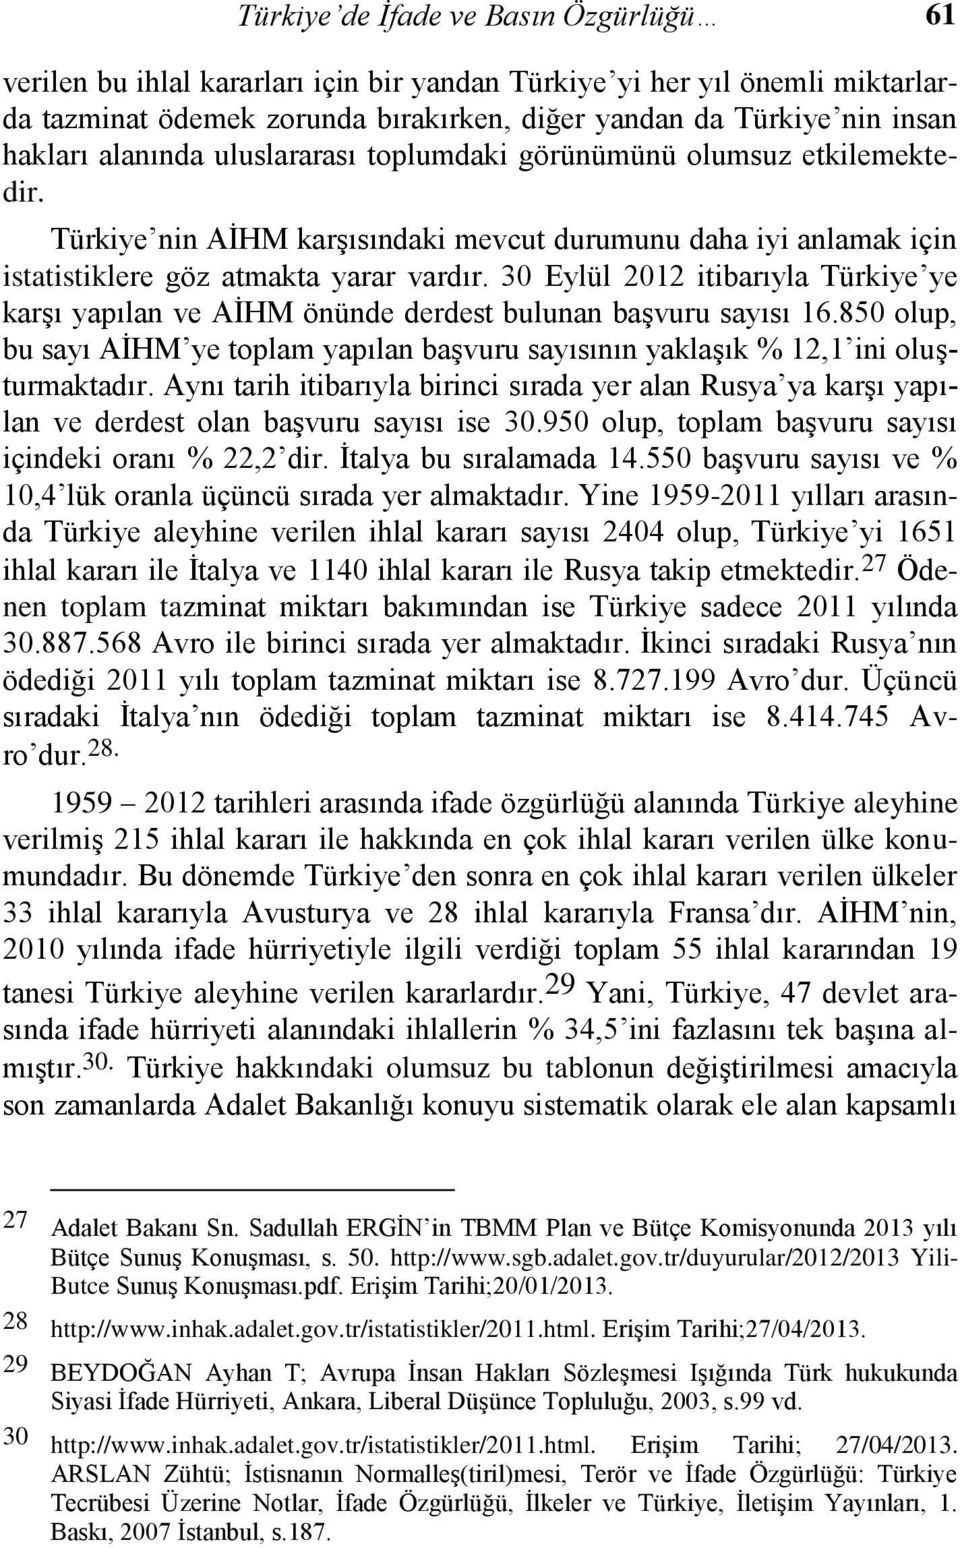 30 Eylül 2012 itibarıyla Türkiye ye karşı yapılan ve AİHM önünde derdest bulunan başvuru sayısı 16.850 olup, bu sayı AİHM ye toplam yapılan başvuru sayısının yaklaşık % 12,1 ini oluşturmaktadır.